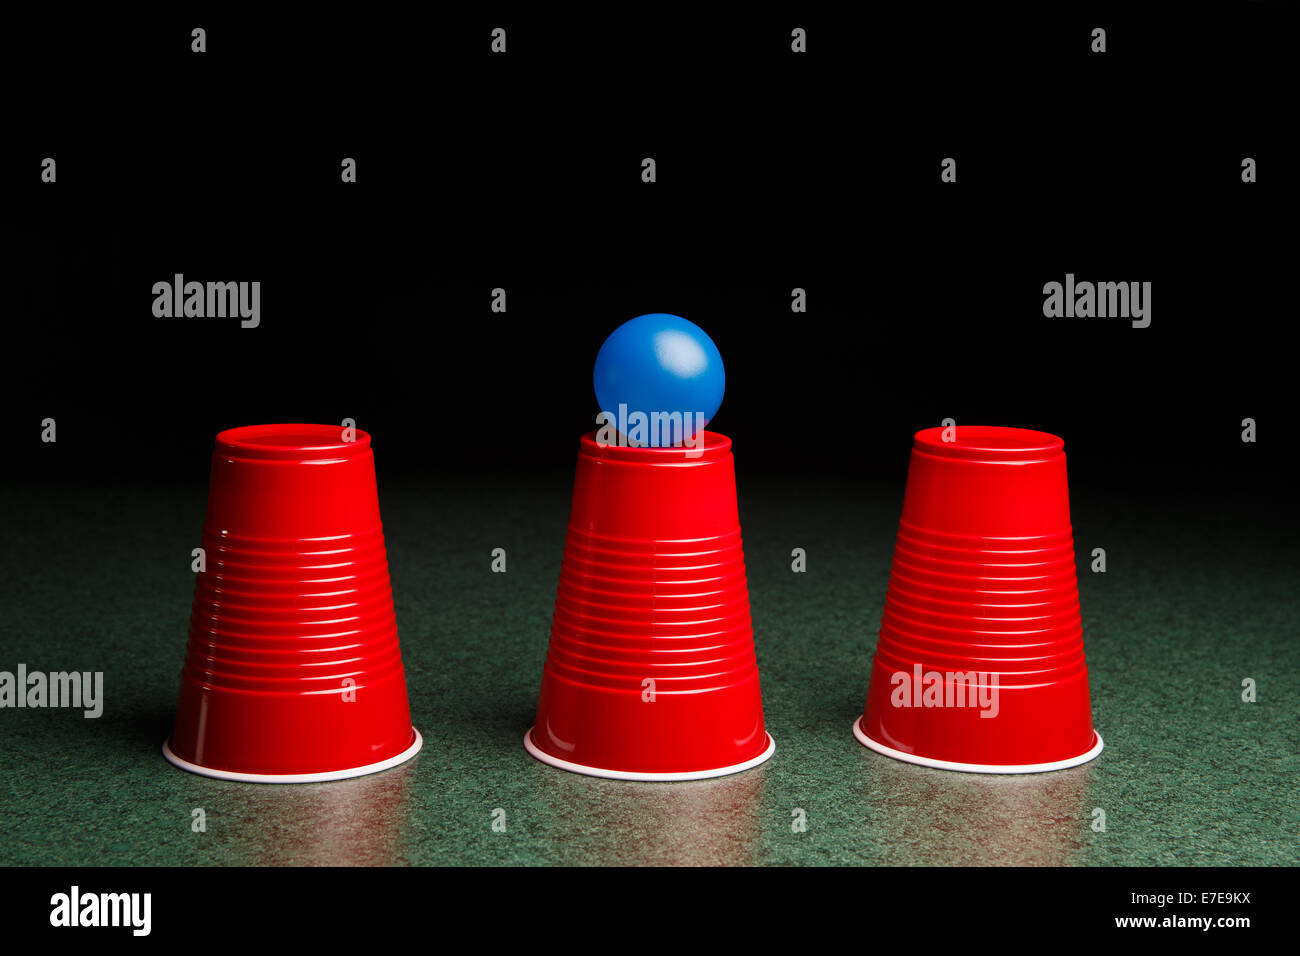 Juego de conchas - tres tazas de color rojo y una bola azul en un cuadro  verde dispuestos como el juego de conchas. Los juegos de azar. Copie el  espacio Fotografía de